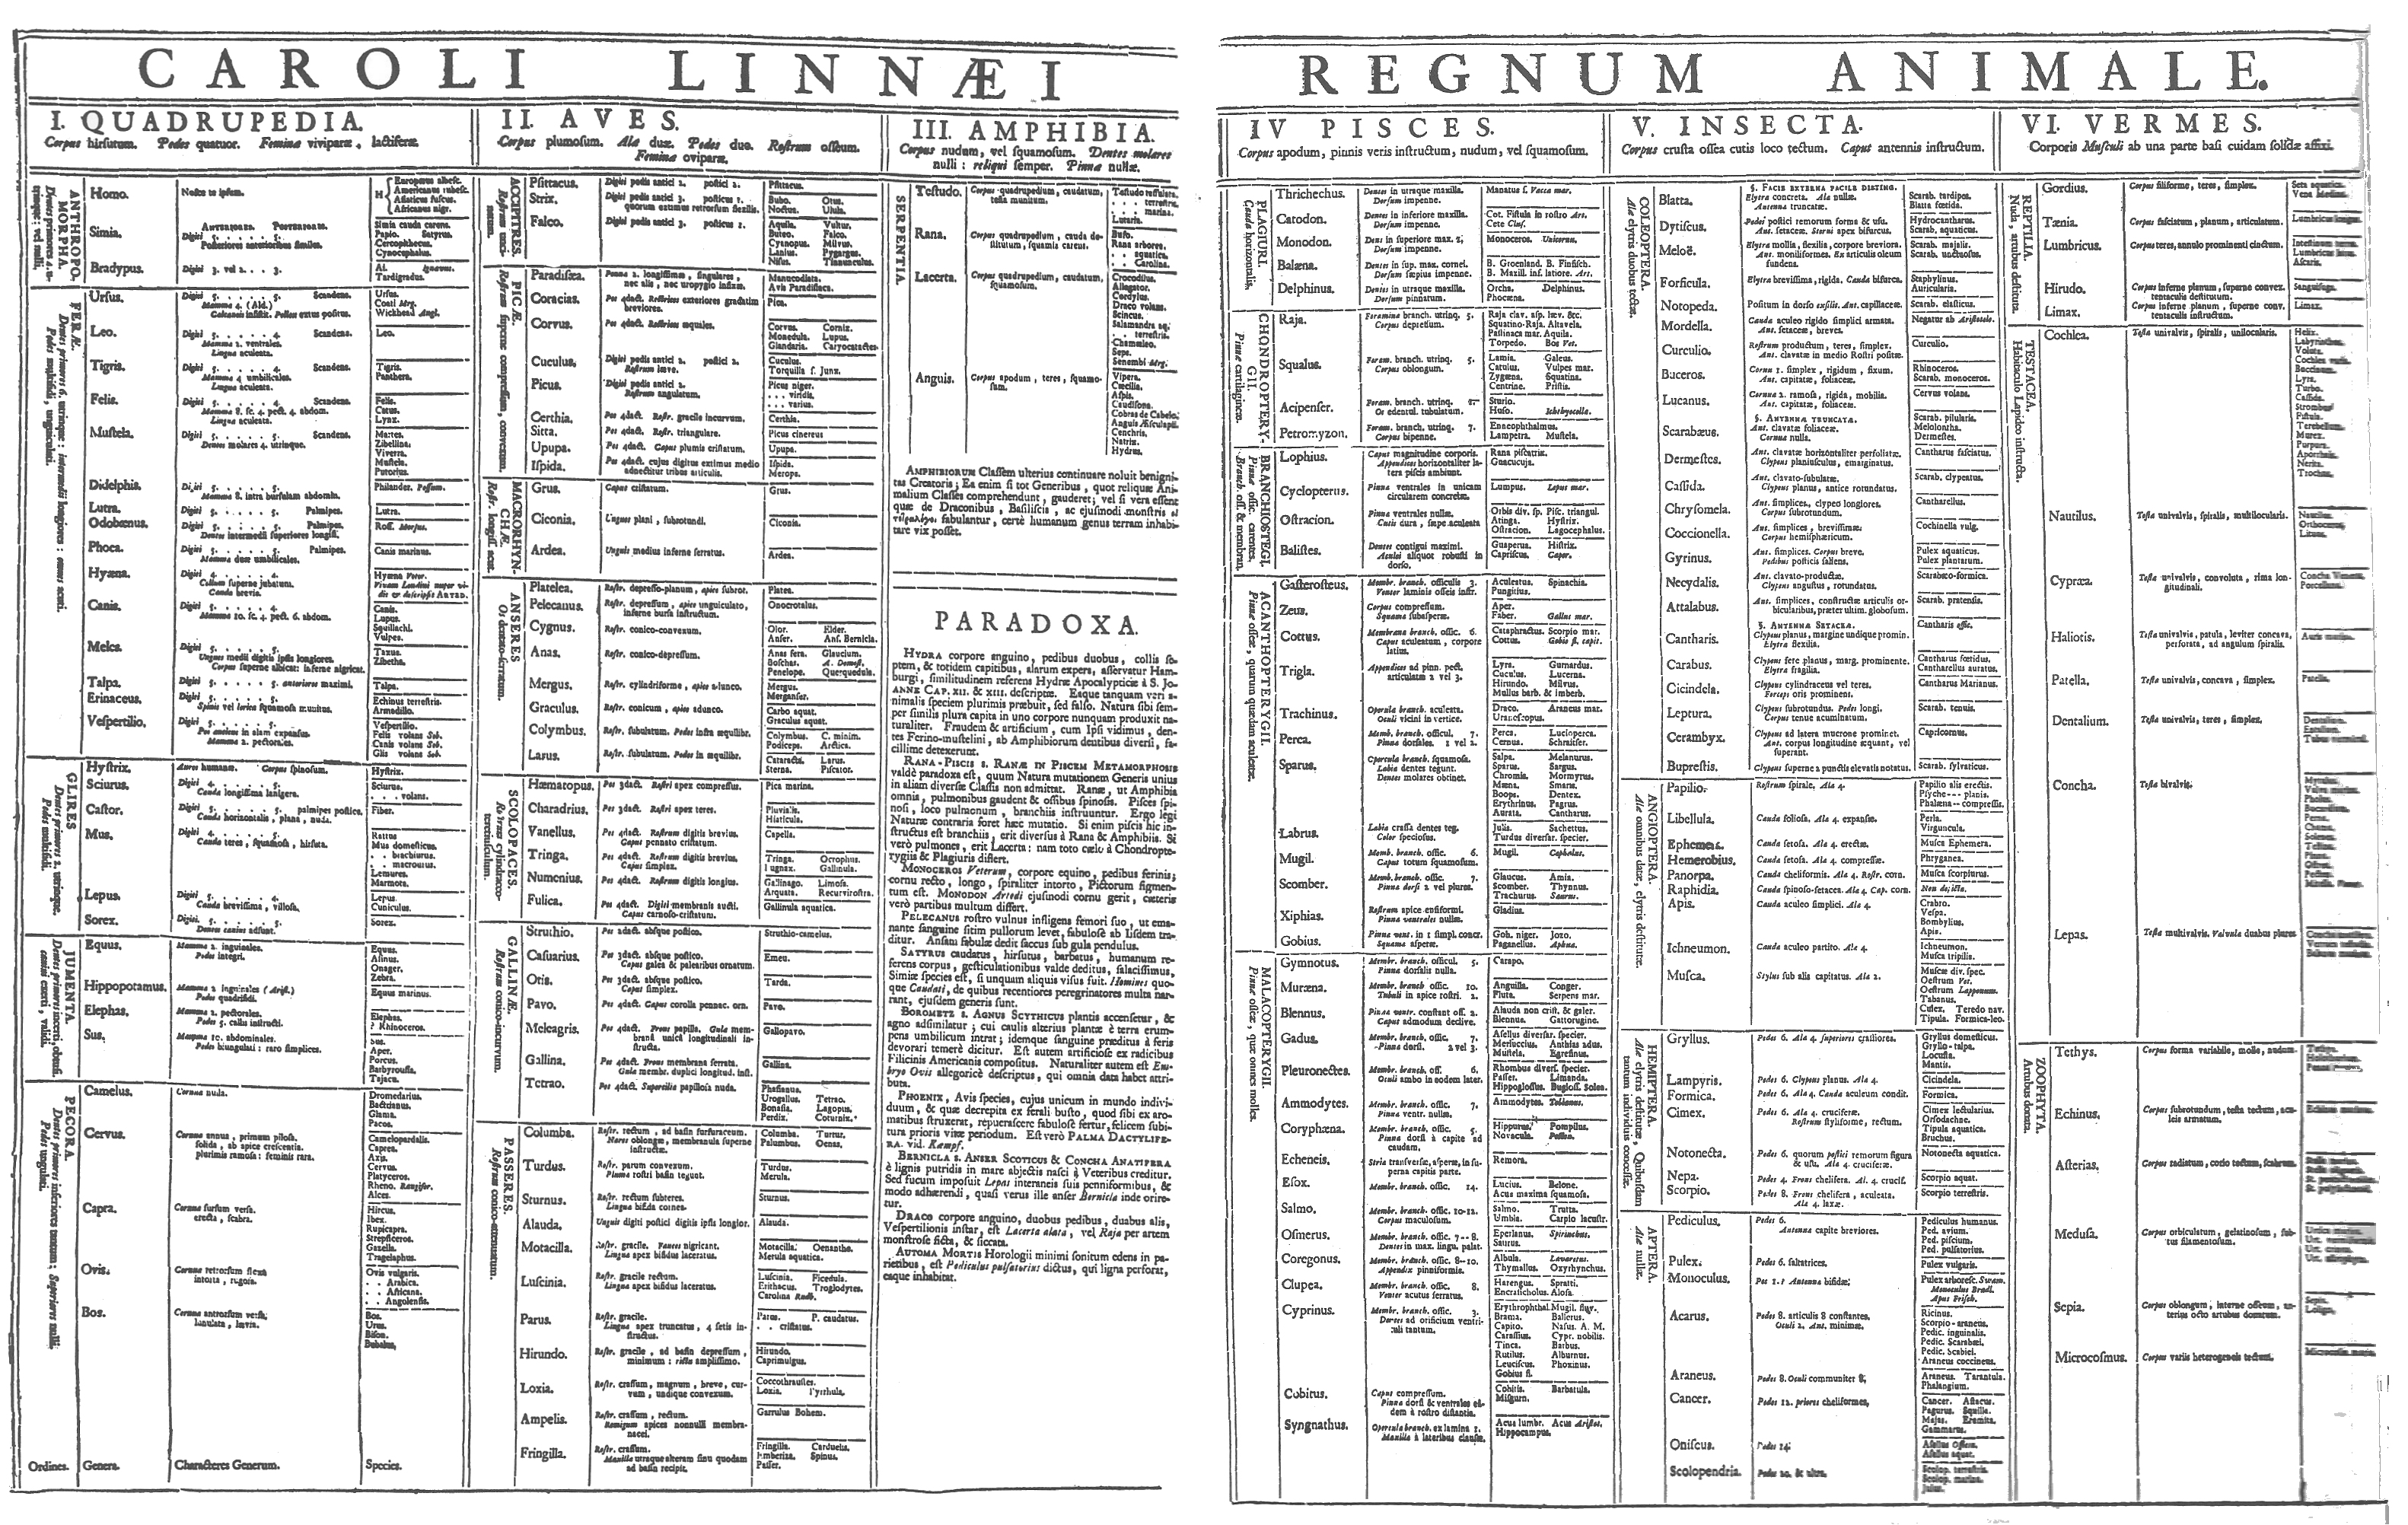 Systema Naturae, 1735